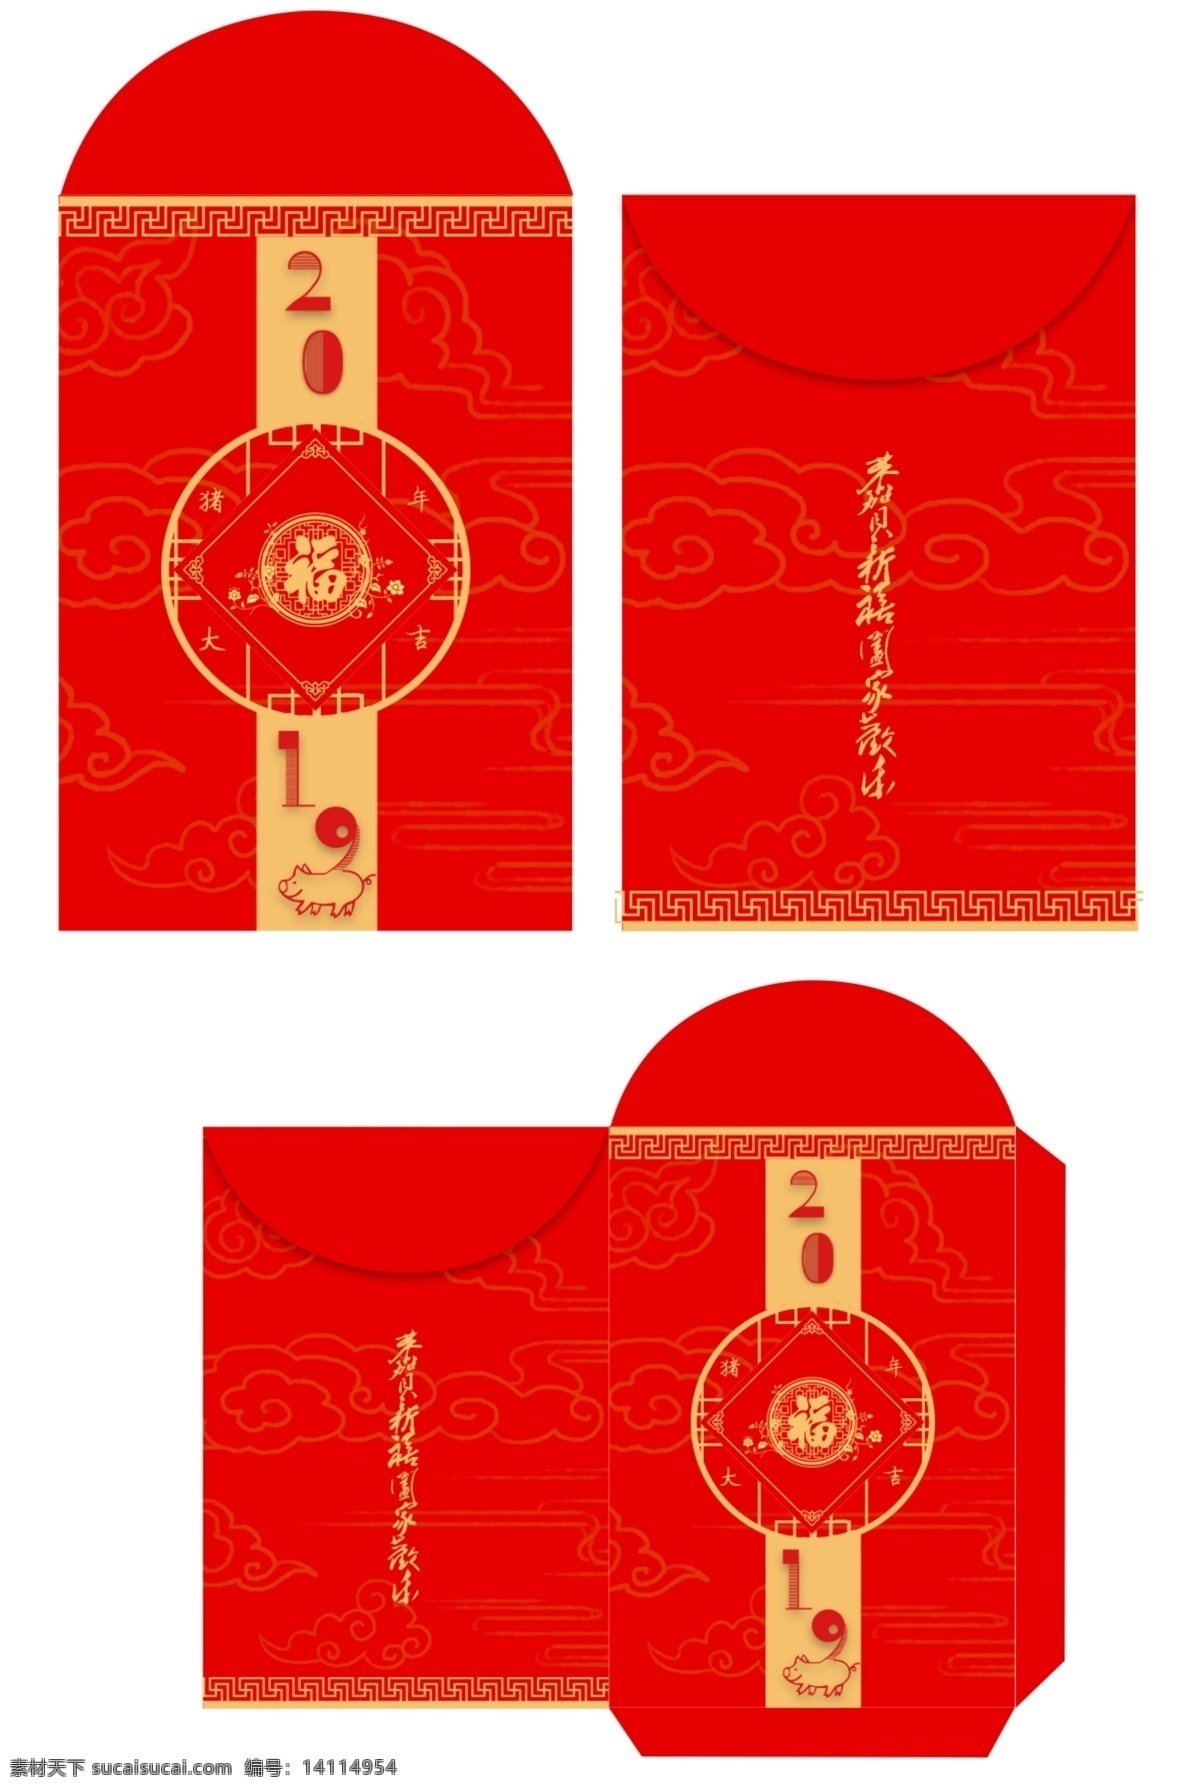 2019 猪年 红包 金 猪 送 福 中国 节 新年红包 红包素材 红包袋 红包模板 猪福年 新年红包袋 红包袋模板 猪年红包 新年